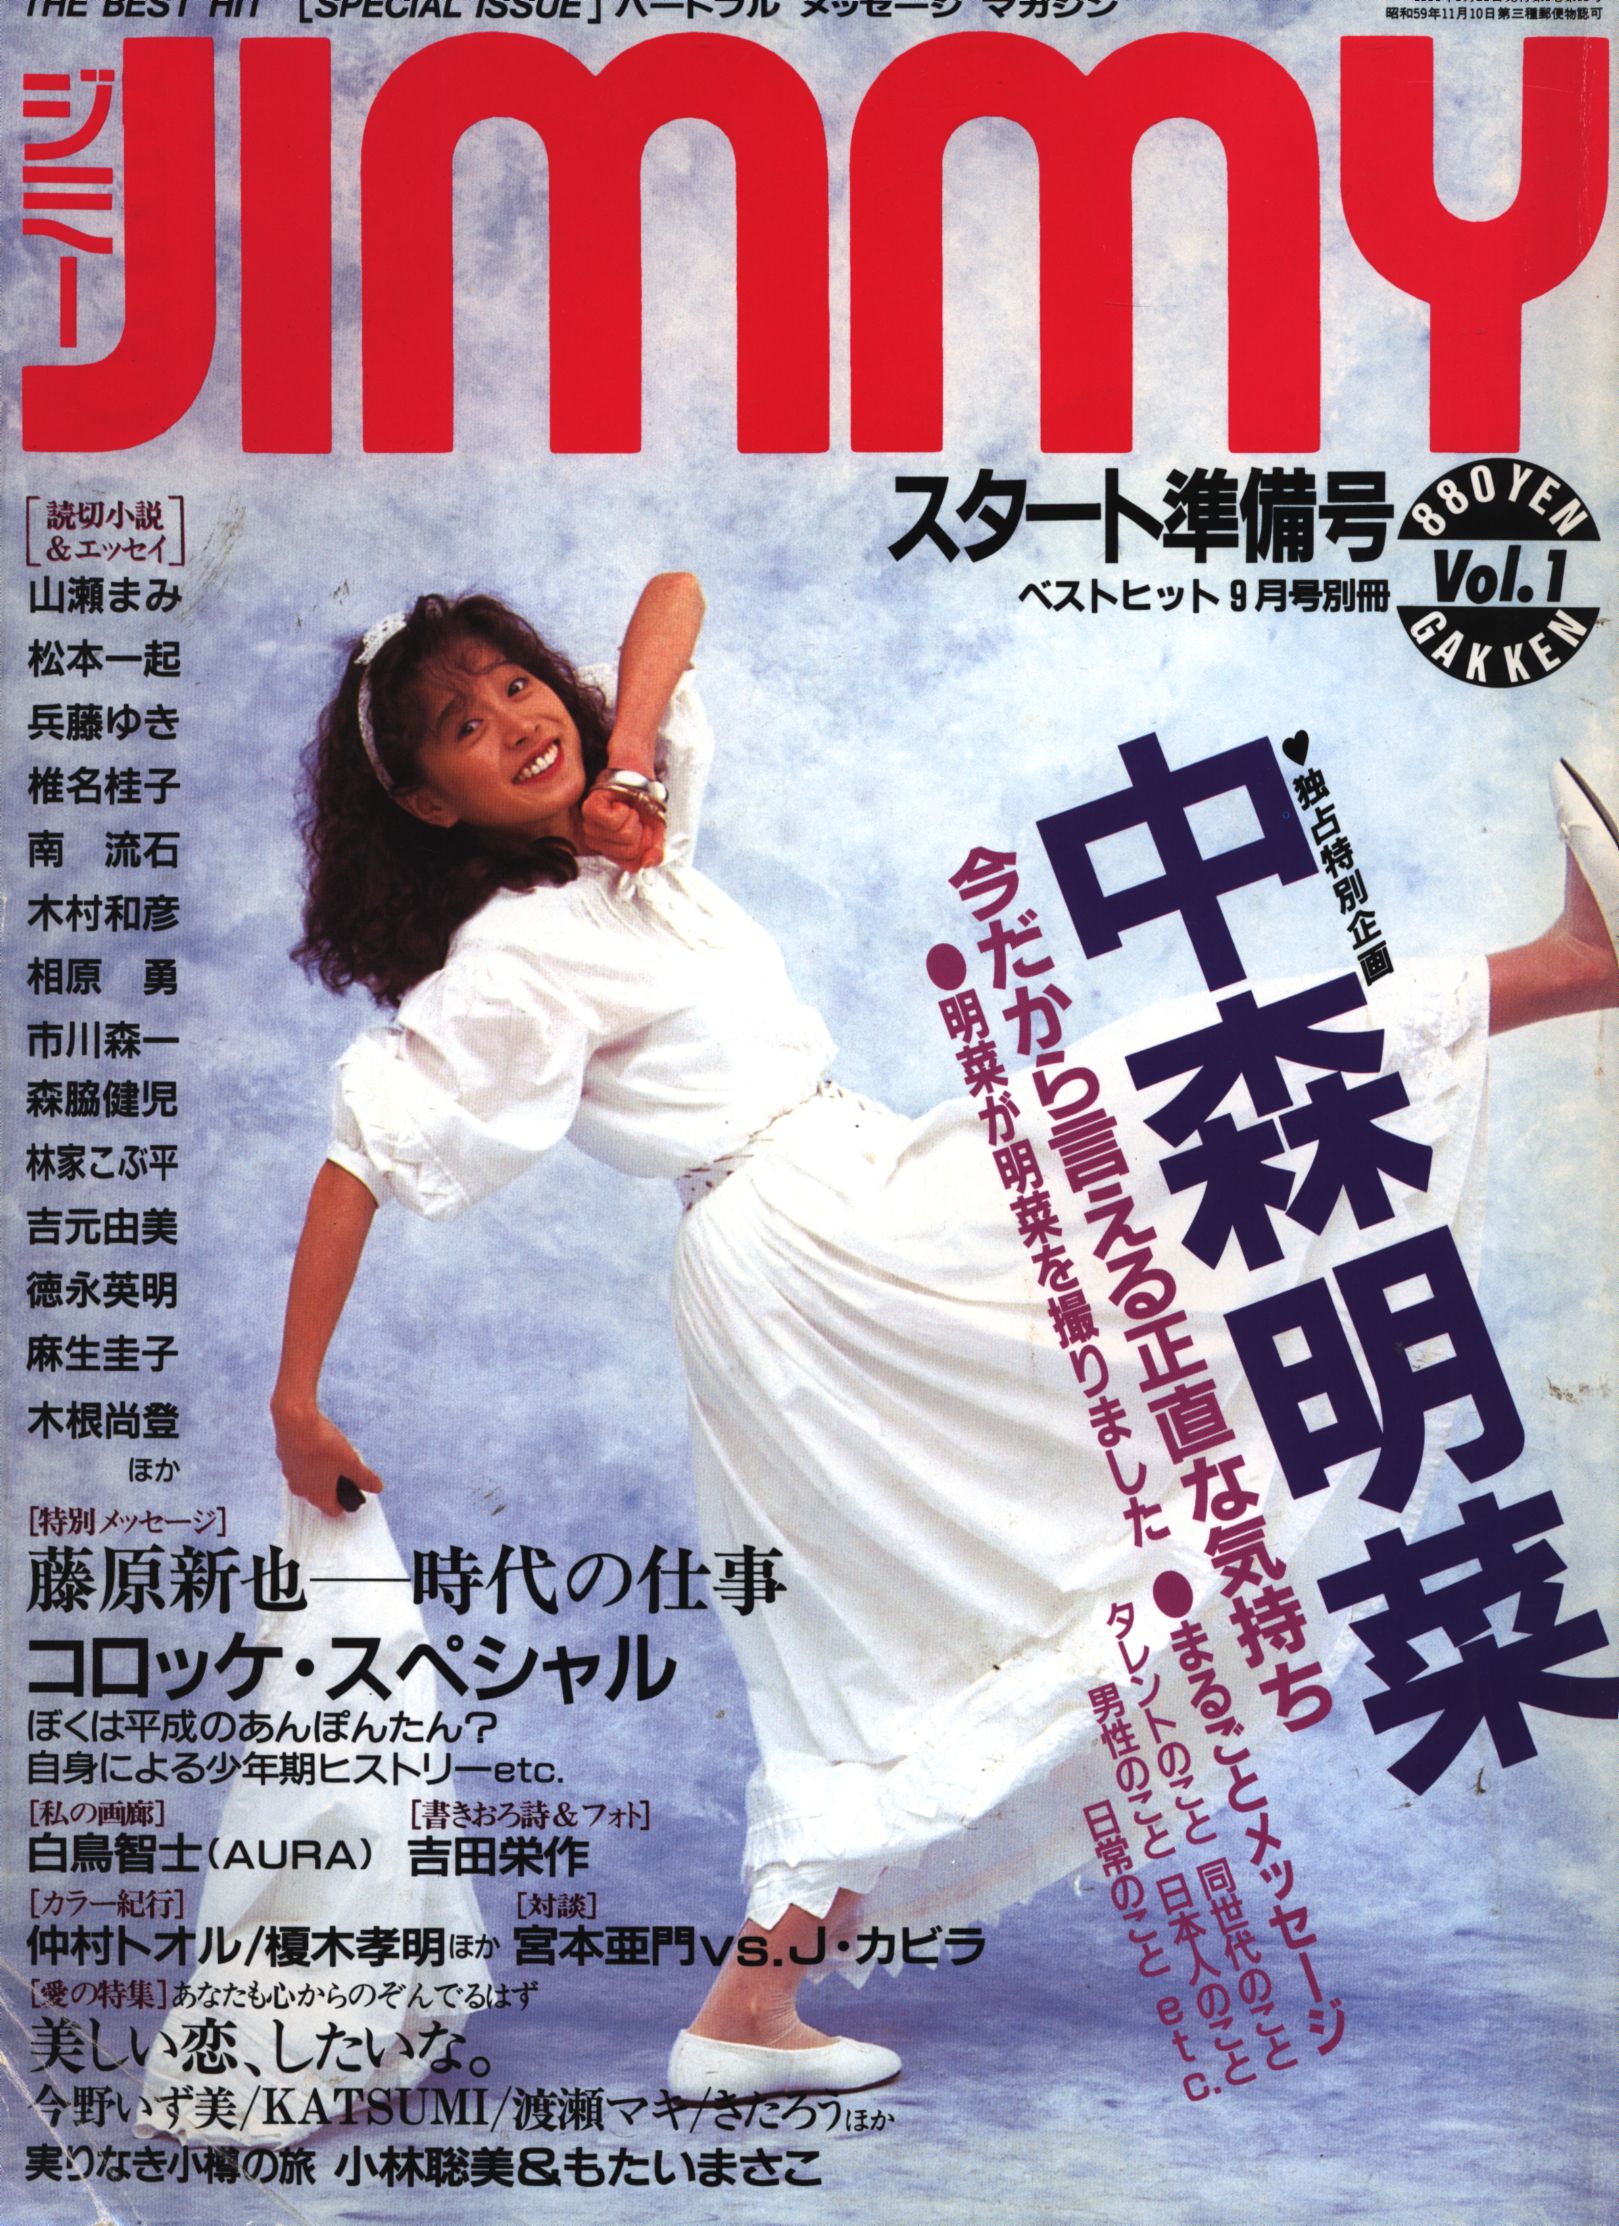 中森明菜 雑誌jimmy 1991年発売 | www.bumblebeebight.ca